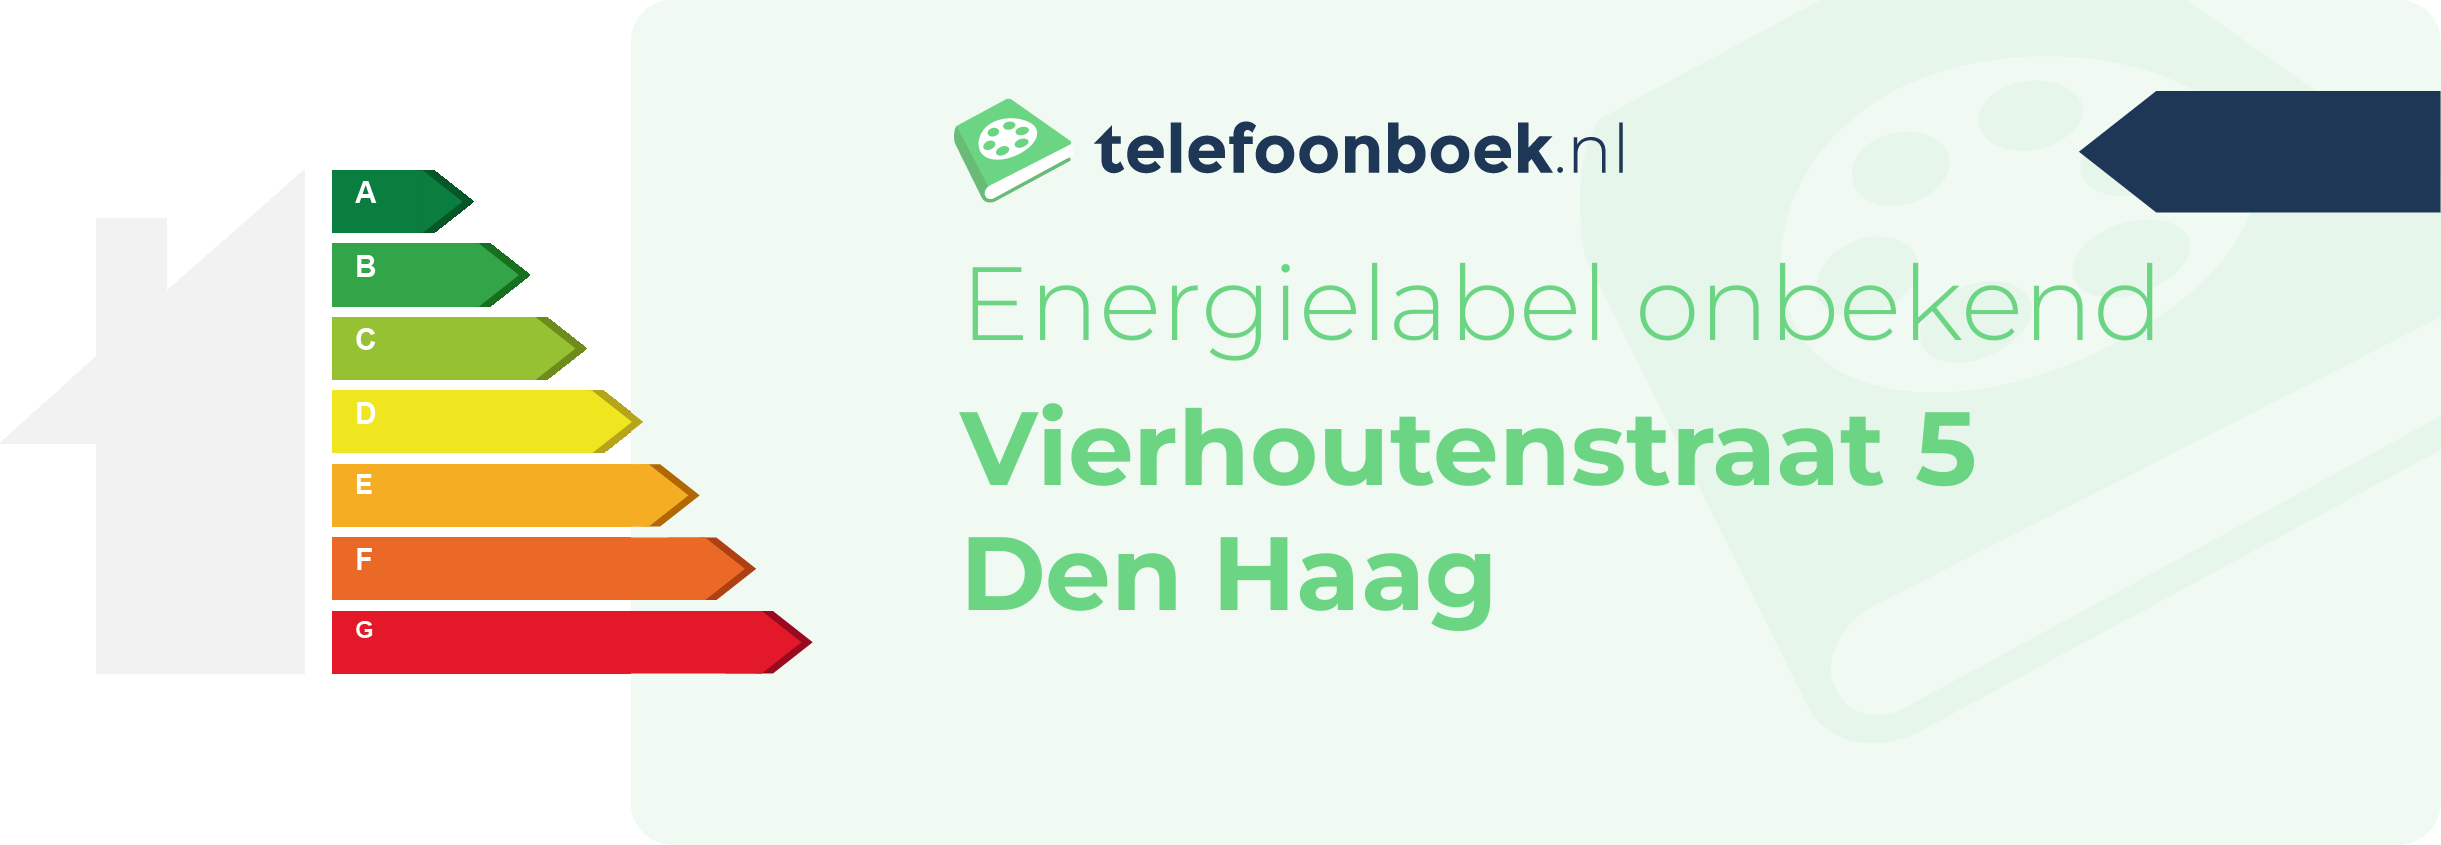 Energielabel Vierhoutenstraat 5 Den Haag